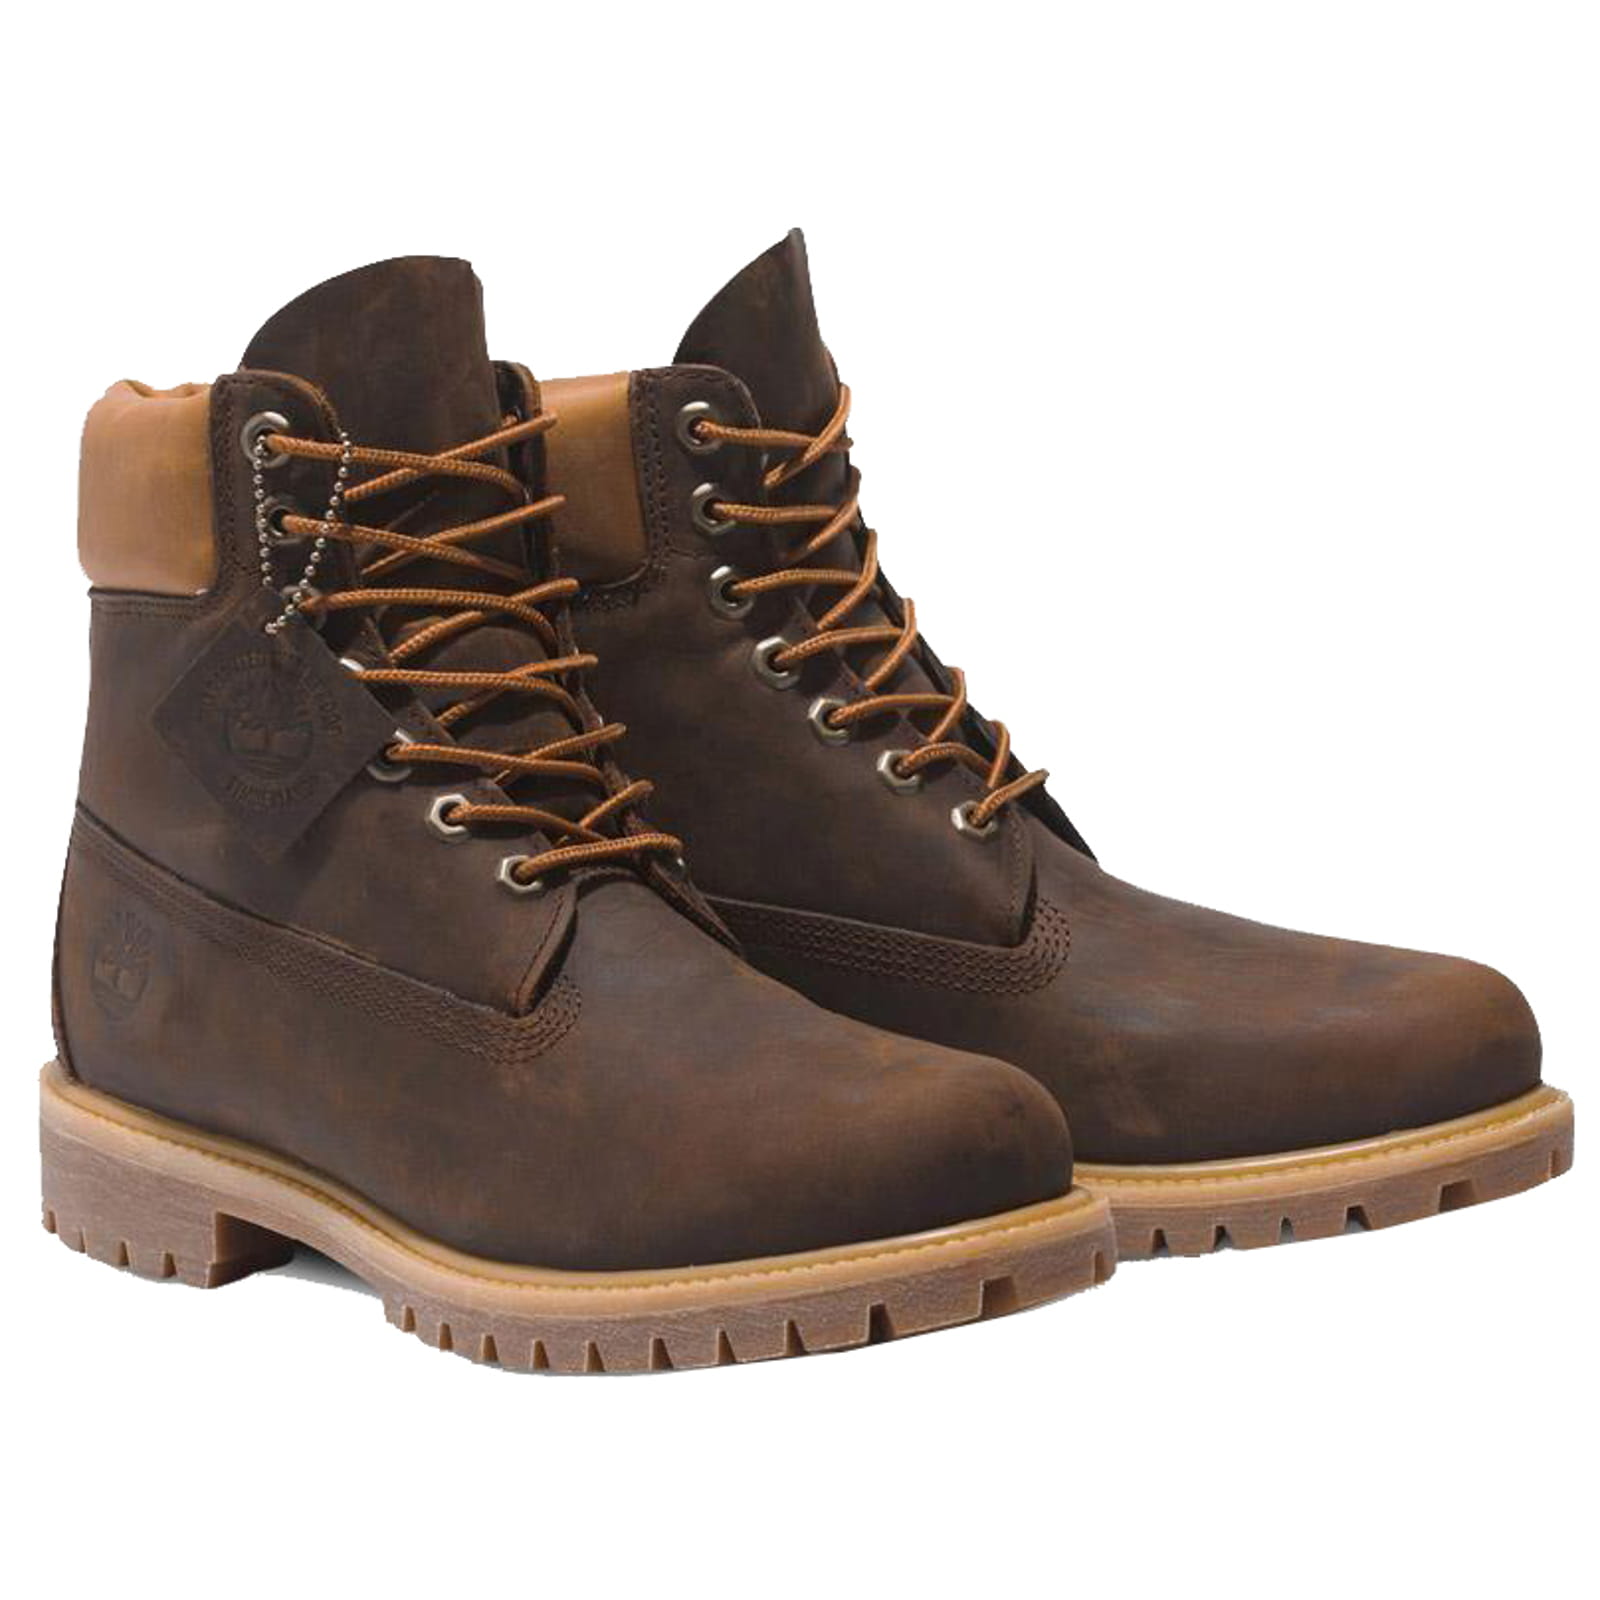 Timberland Men's 6 Inch Premium Waterproof Boots - Brown - UK 11 / US 11.5